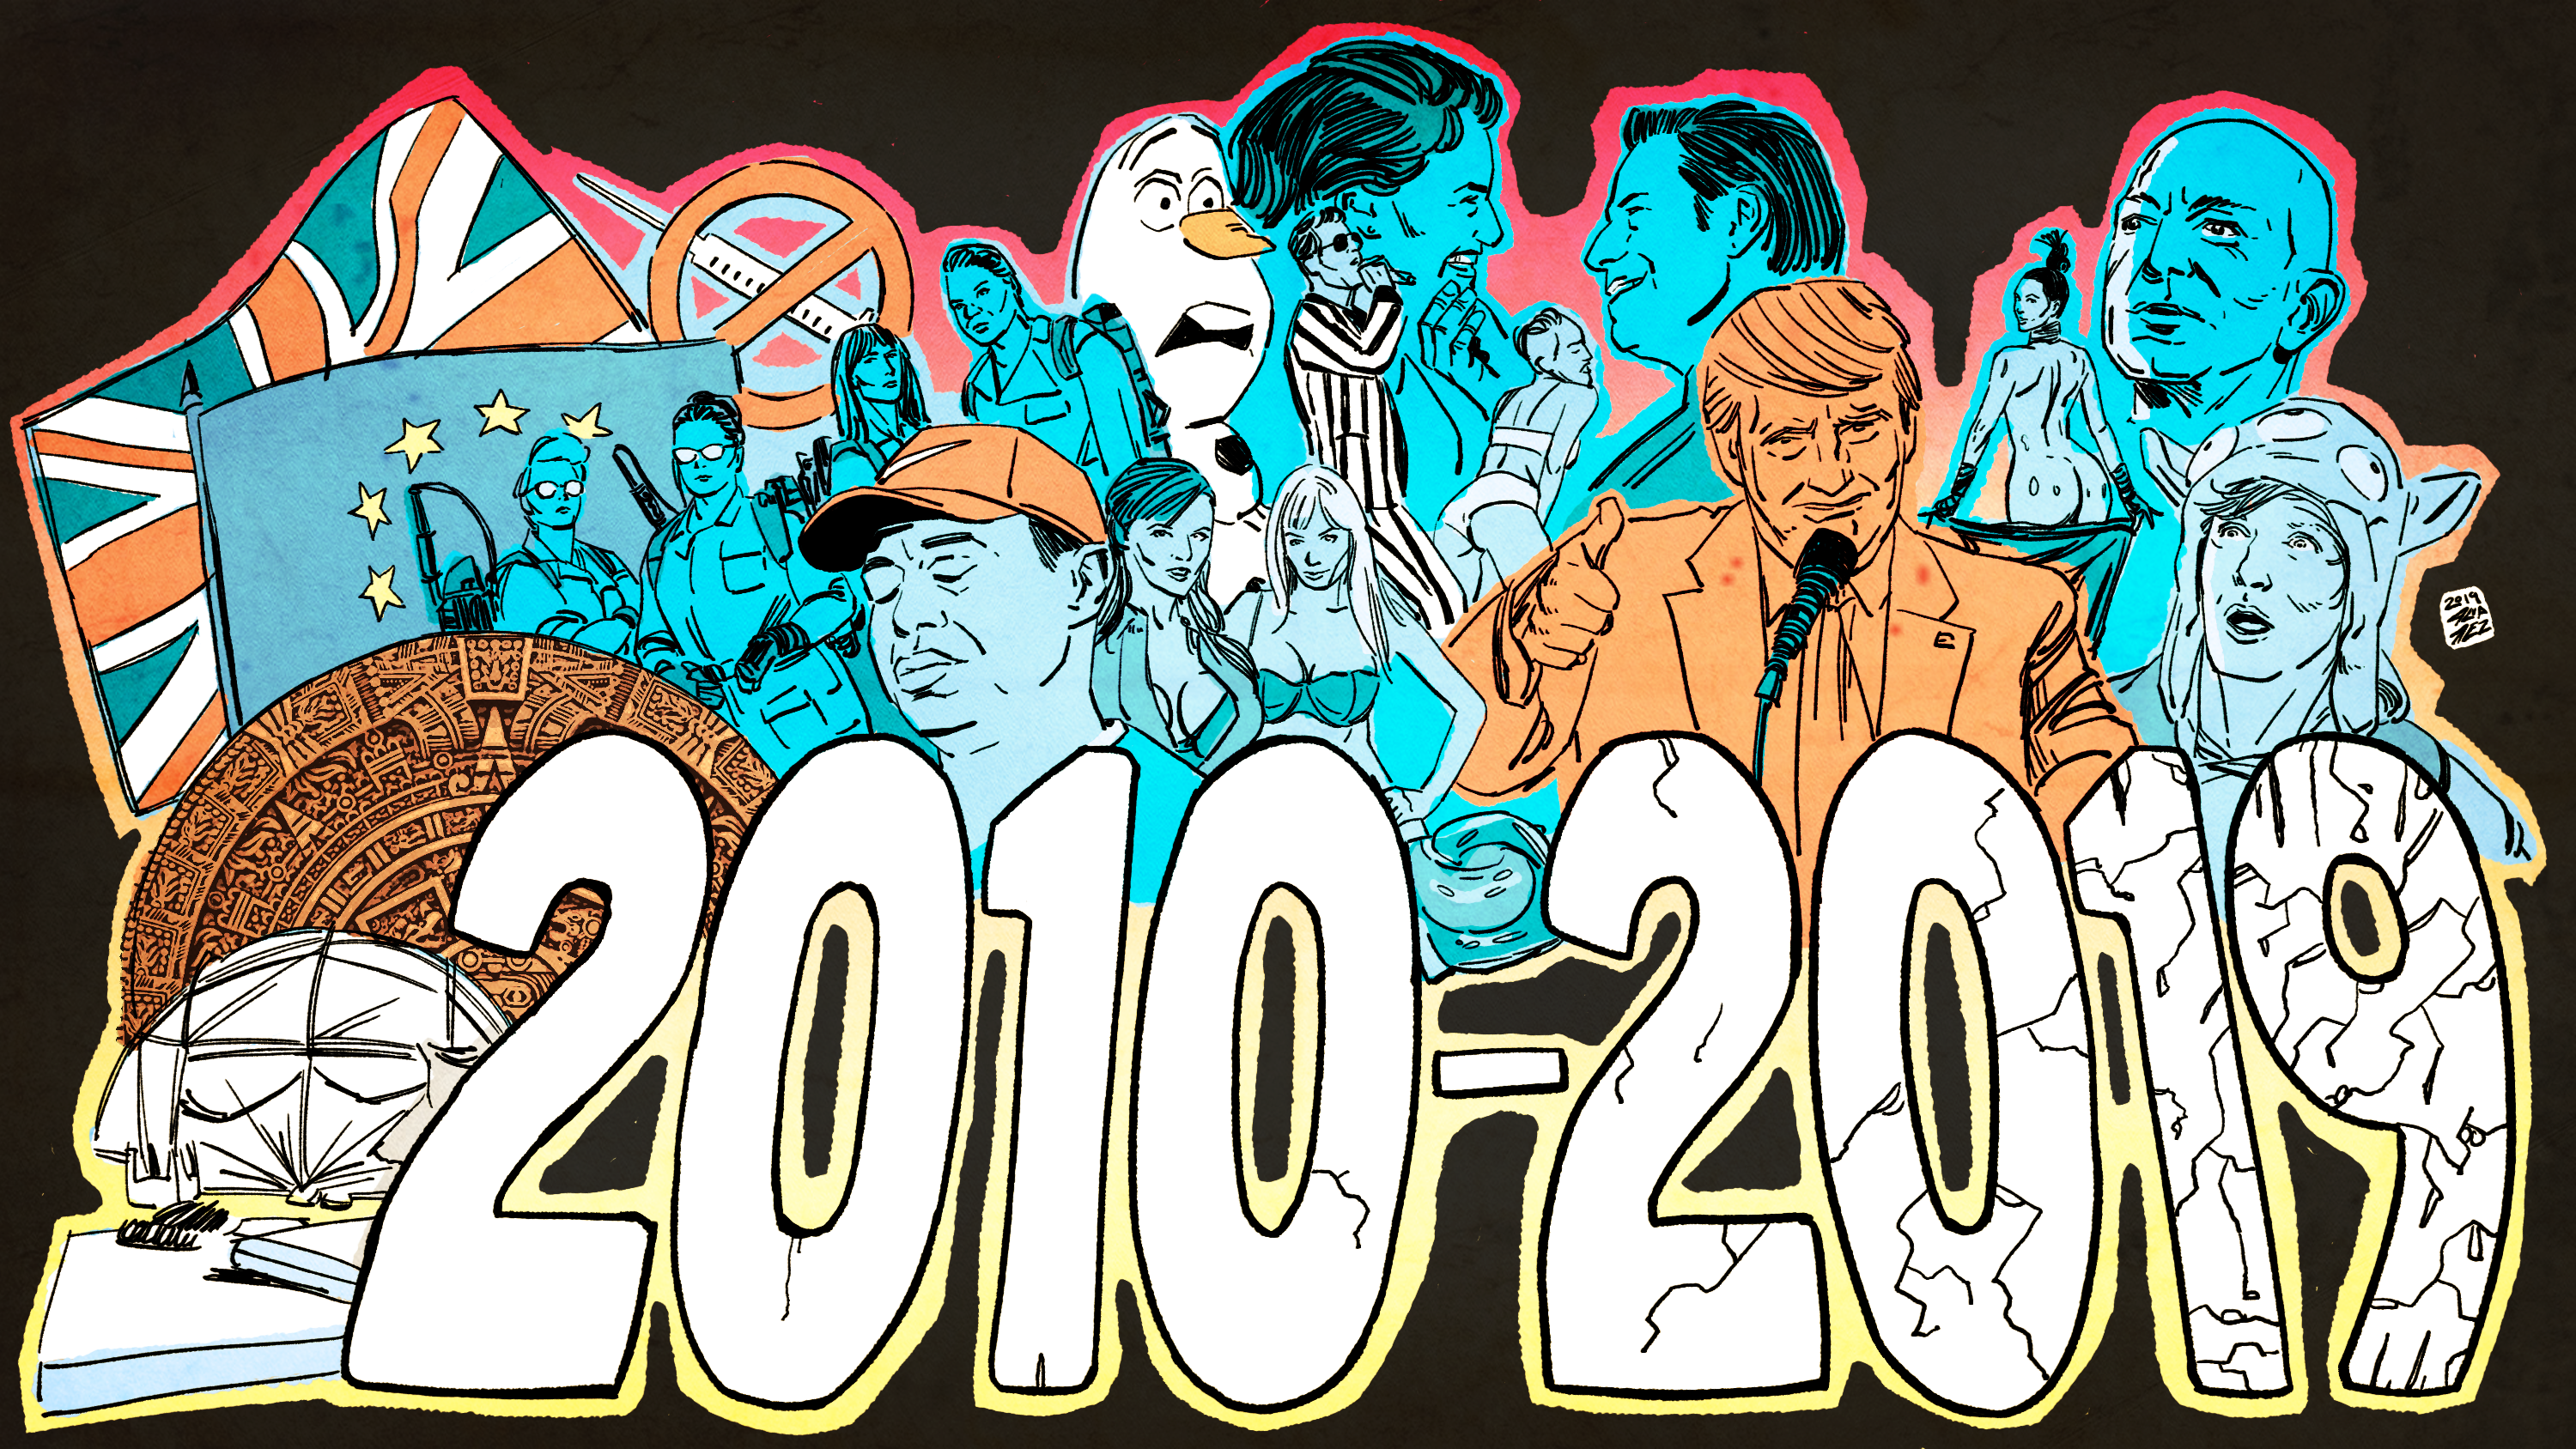 2010-2019